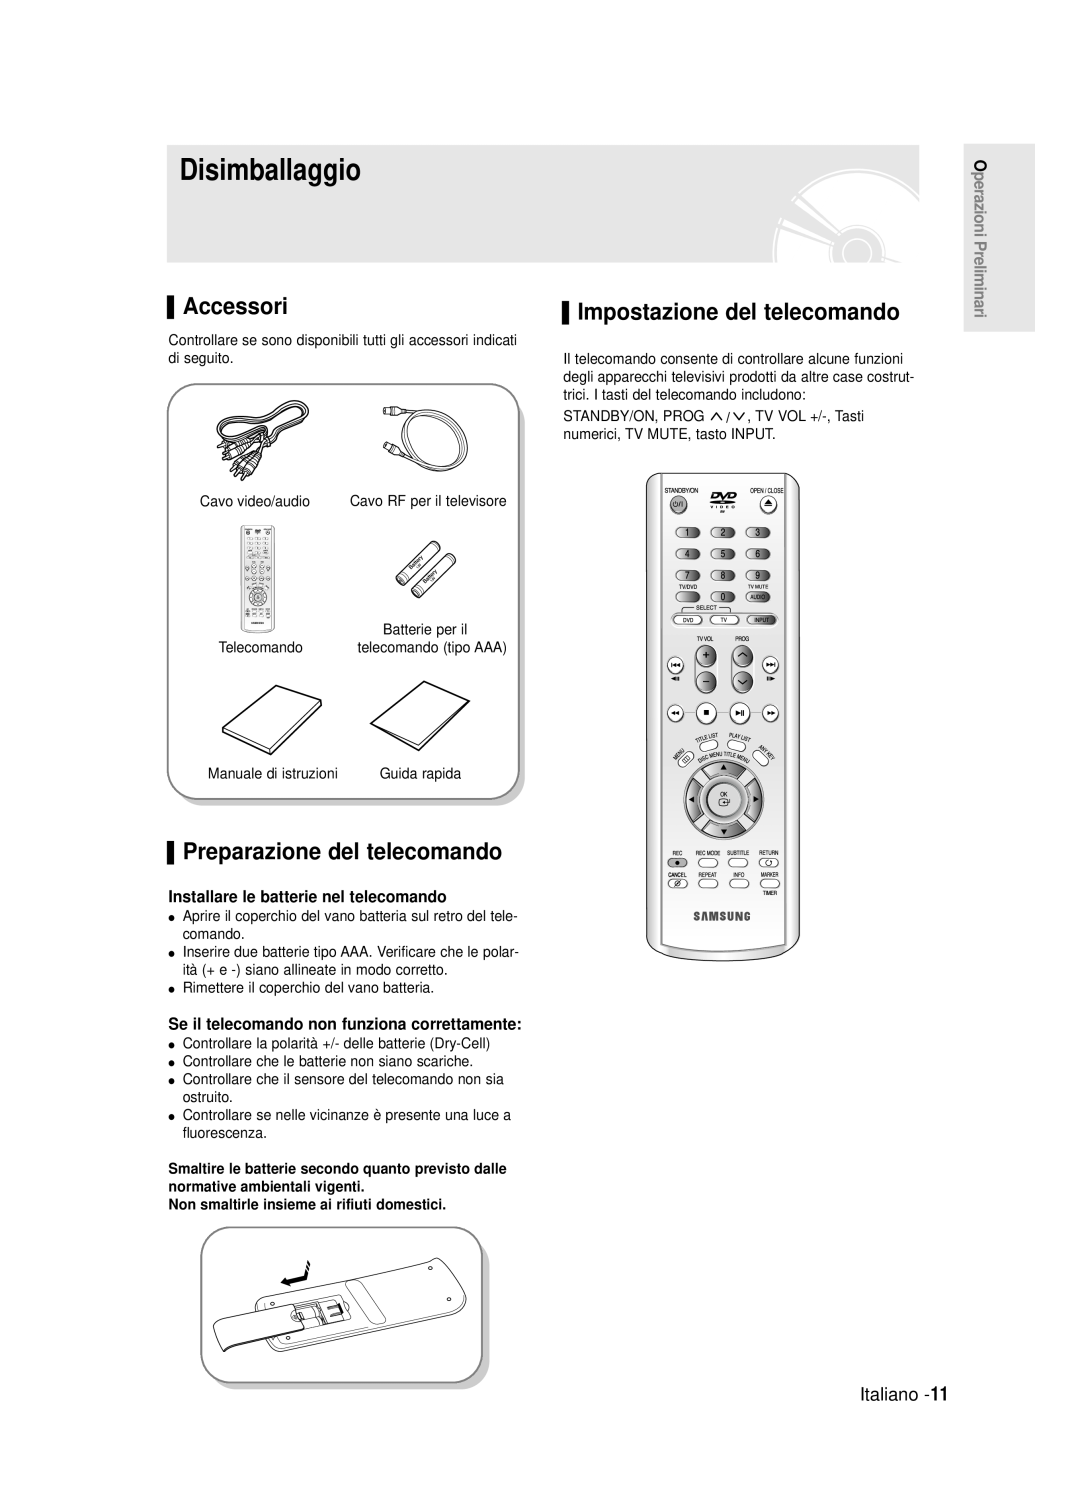 Samsung DVD-R120E/XET Disimballaggio, Accessori, Preparazione del telecomando, Impostazione del telecomando, Italiano 